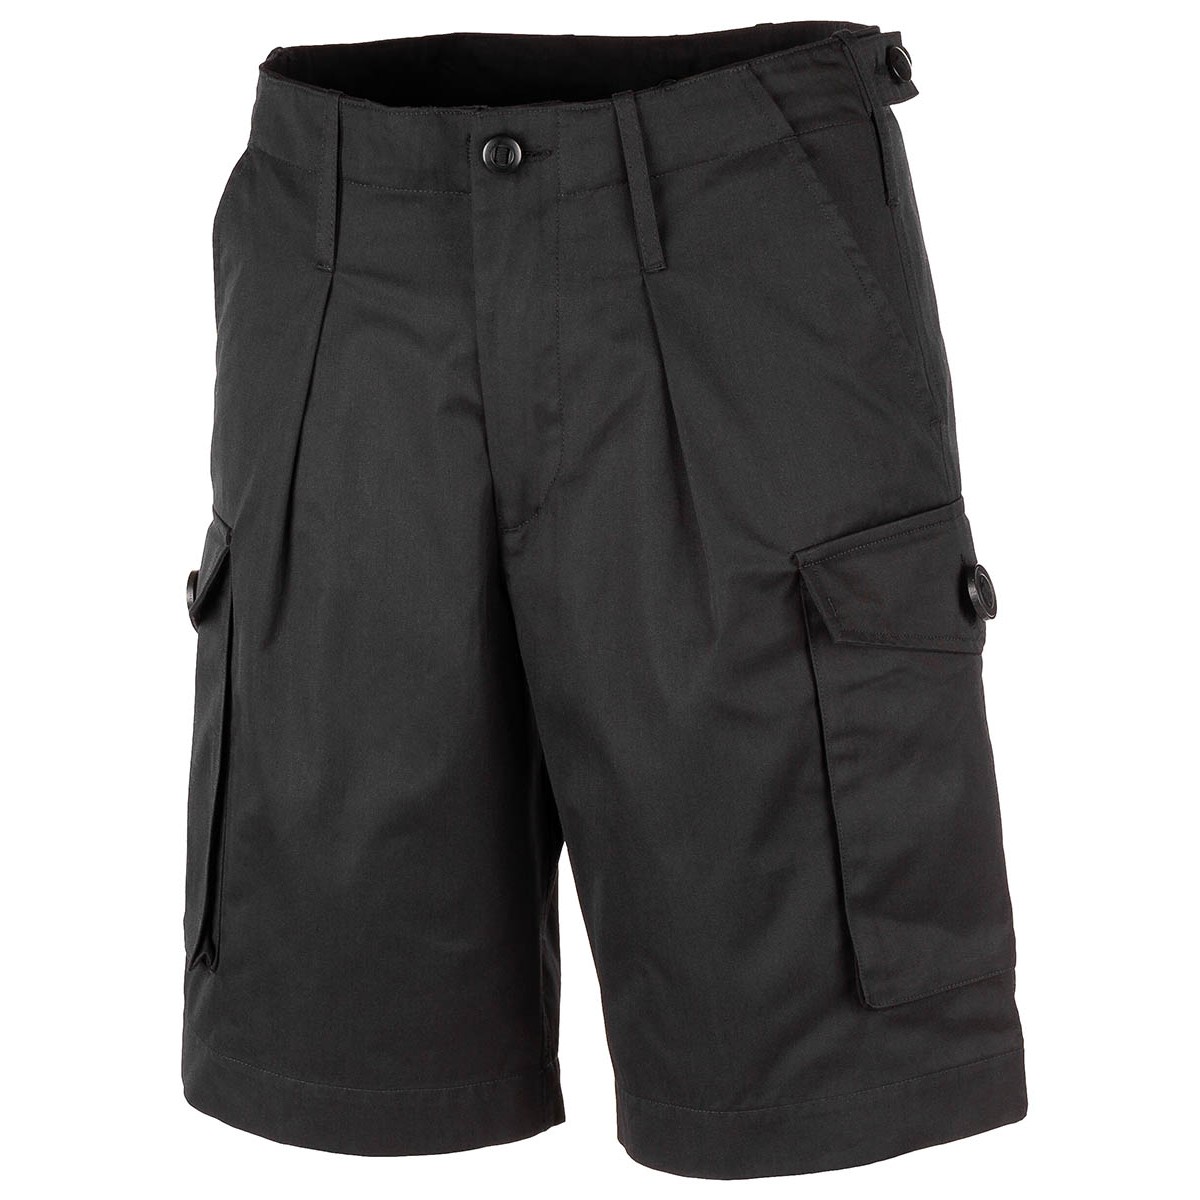 Krátké kalhoty MFH Combat Bermuda - černé, L